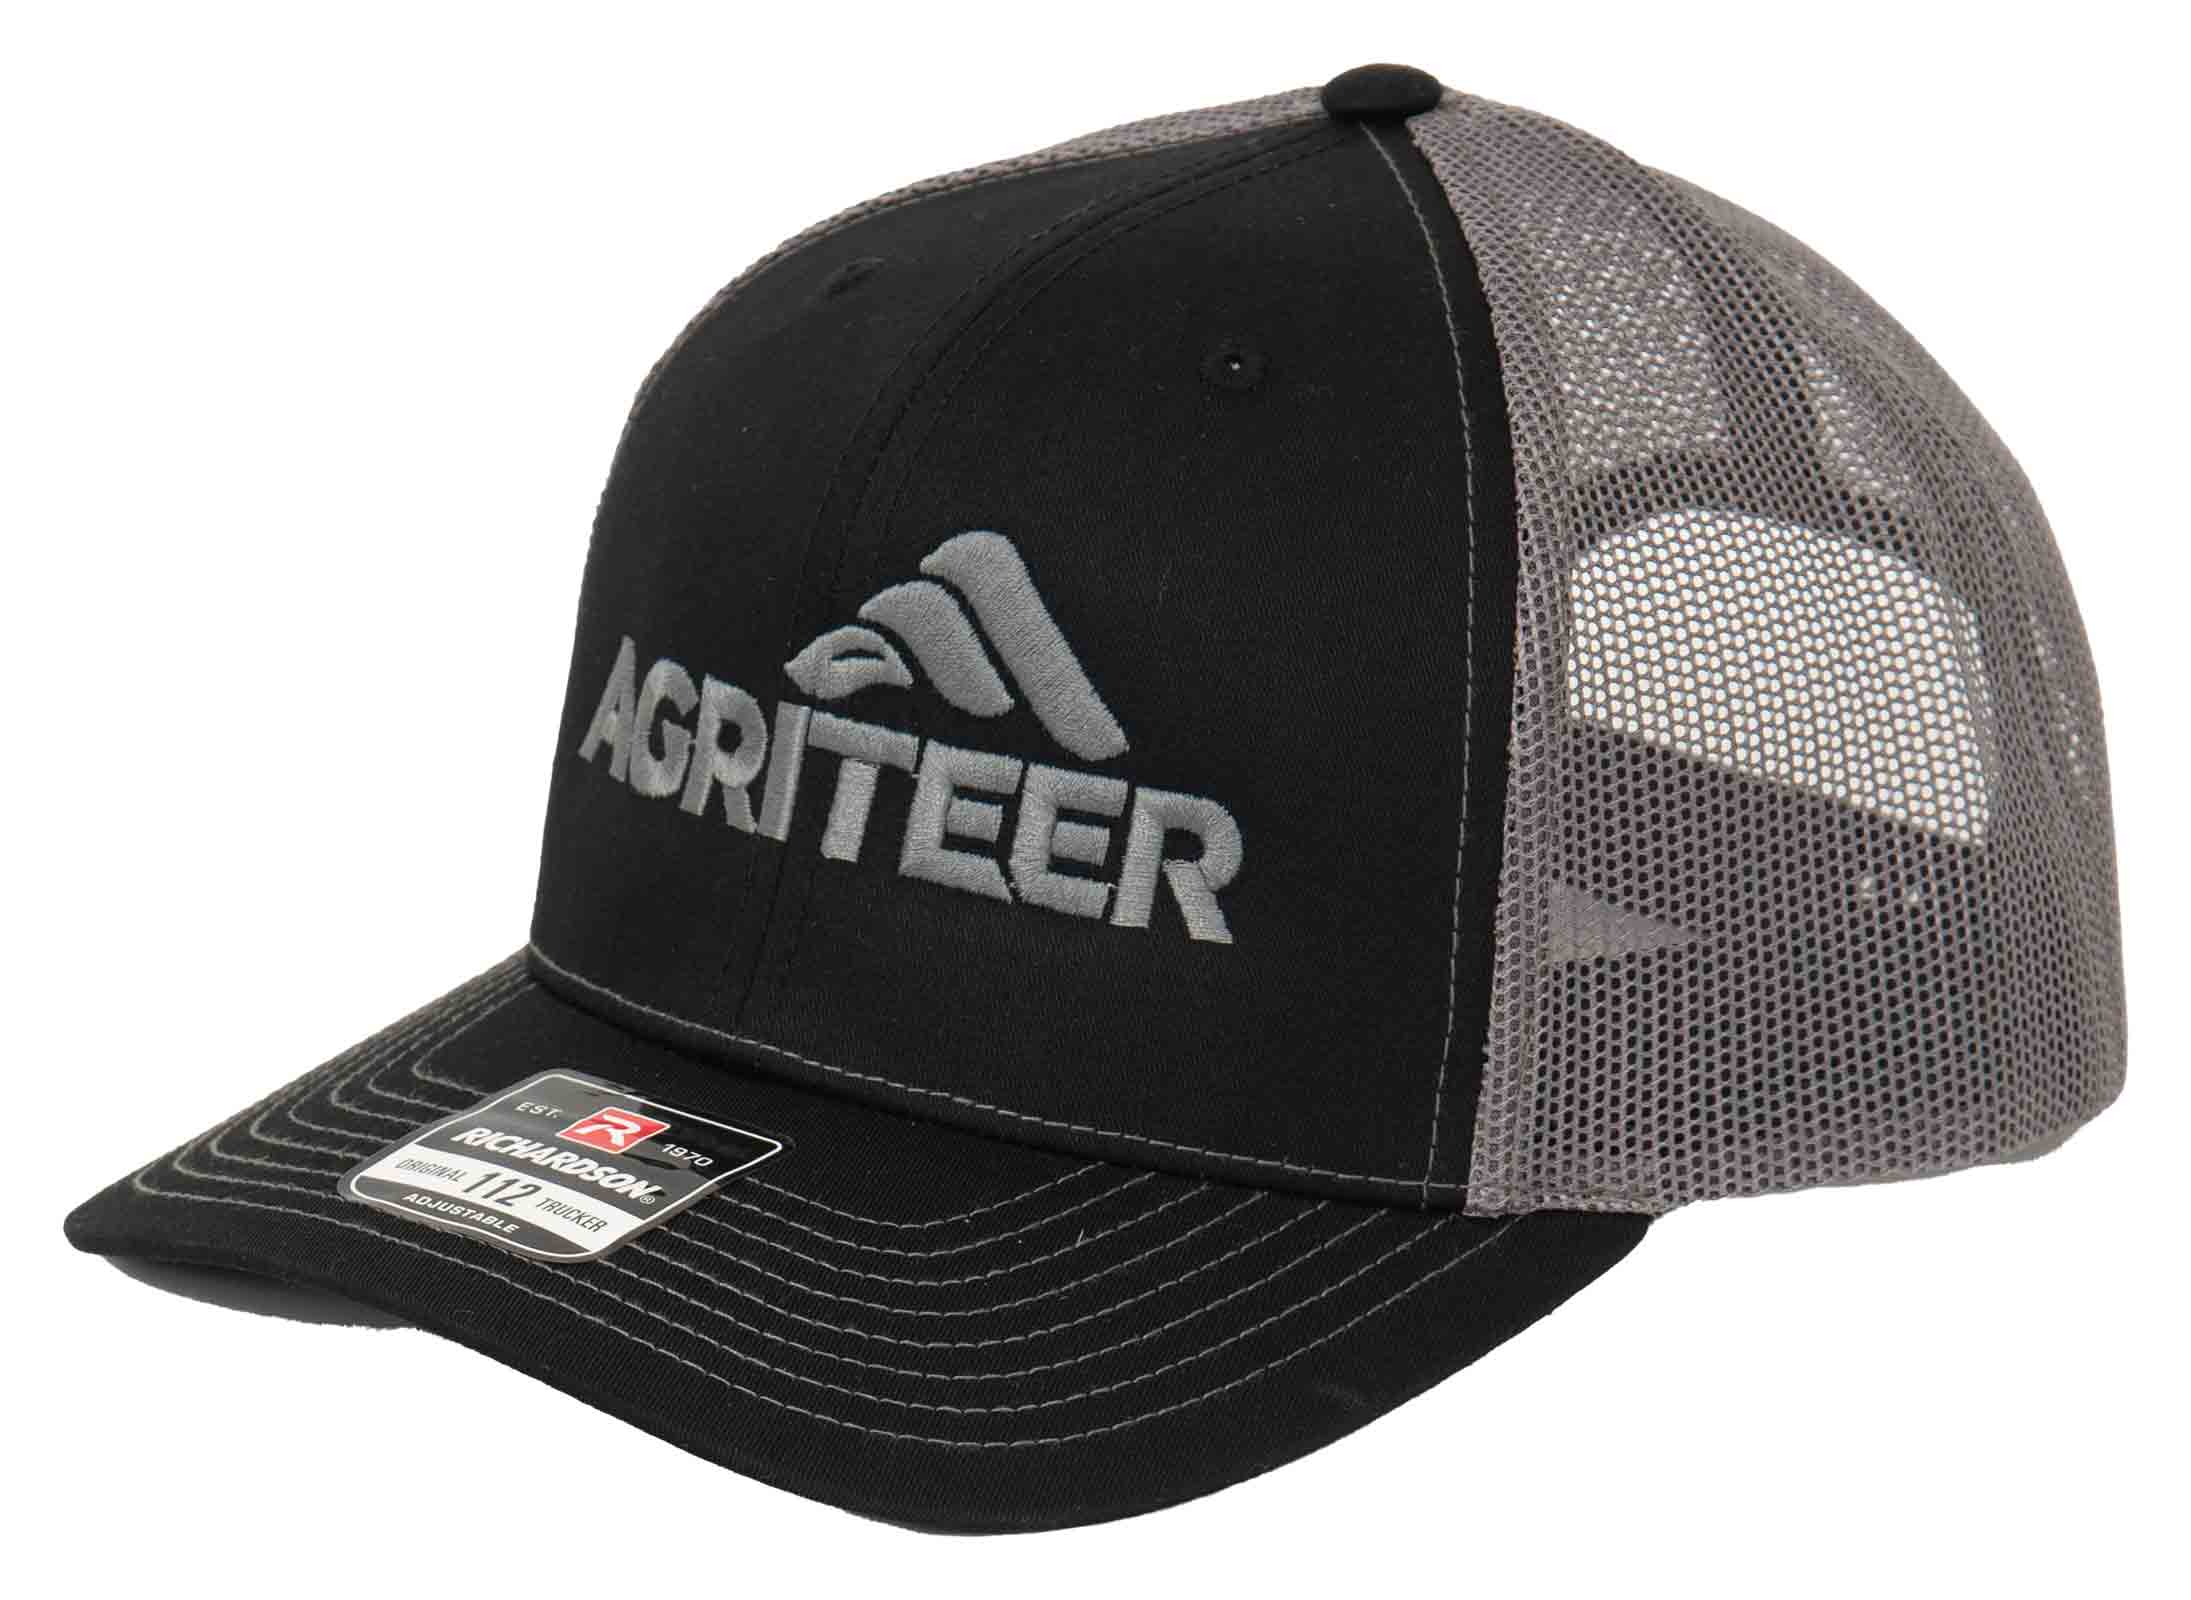 Agriteer Black Trucker Hat